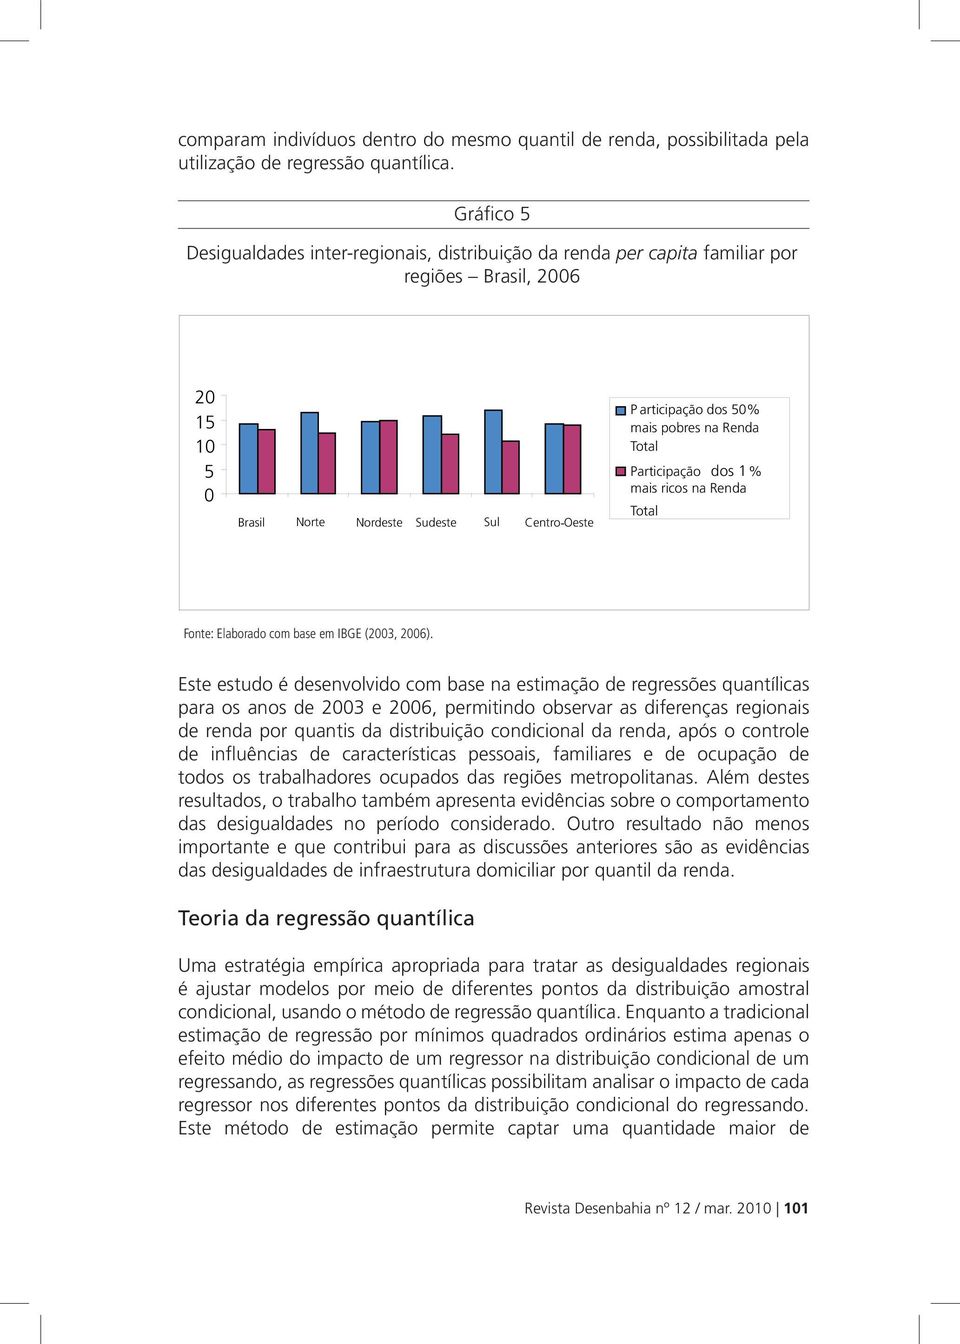 pobres na Renda Total Participação dos 1% mais ricos na Renda Total Fonte: Elaborado com base em IBGE (2003, 2006).